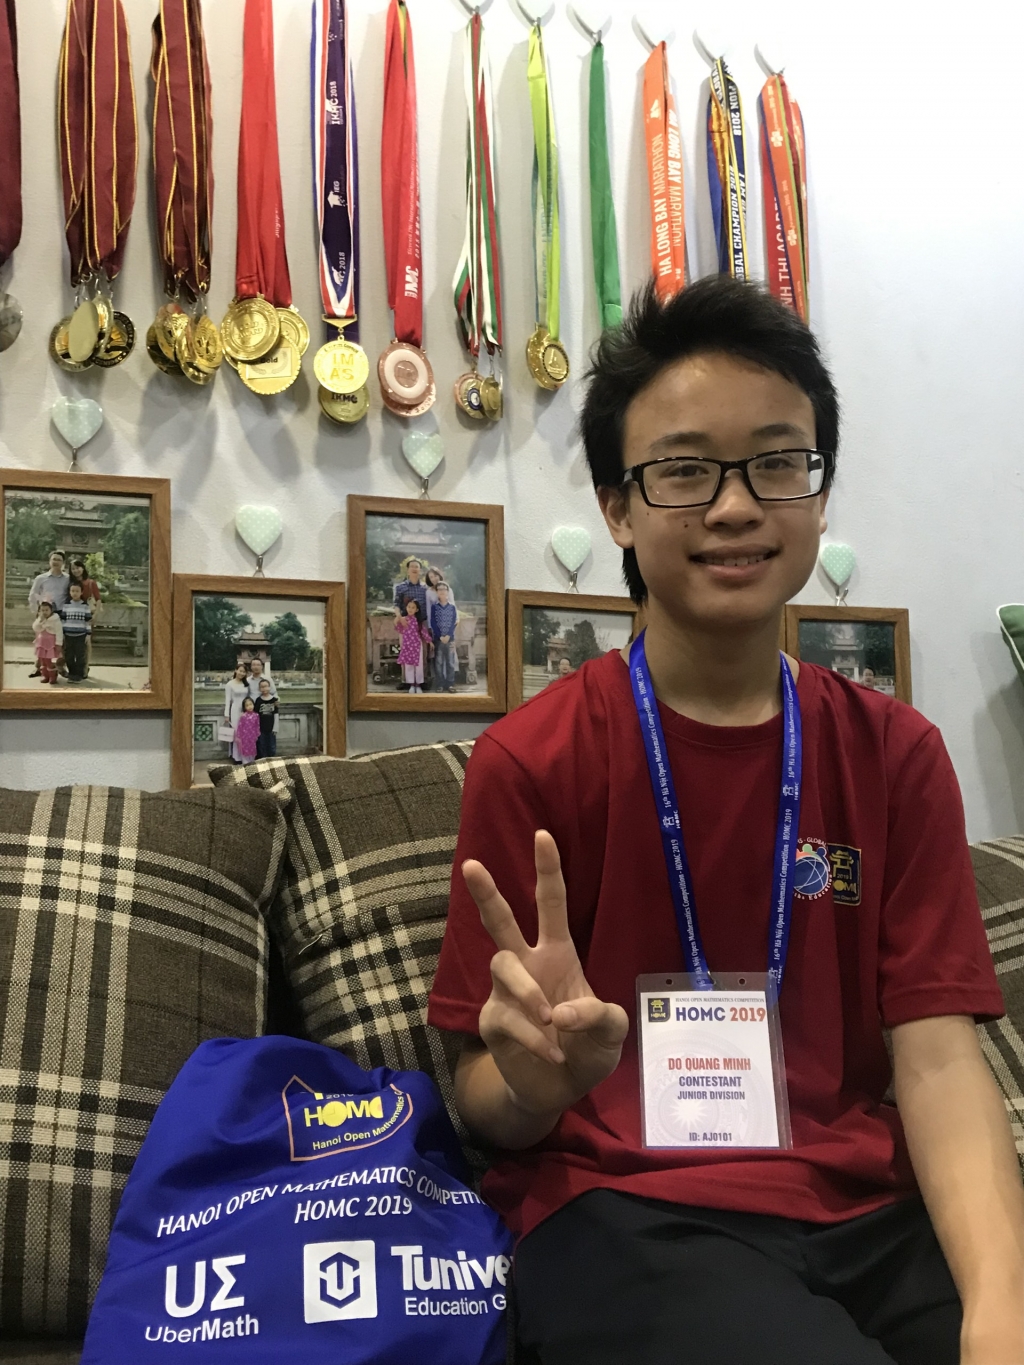 Đỗ Quang Minh sở hữu hàng chục tấm Huy chương Vàng trong các kỳ thi Toán quốc tế